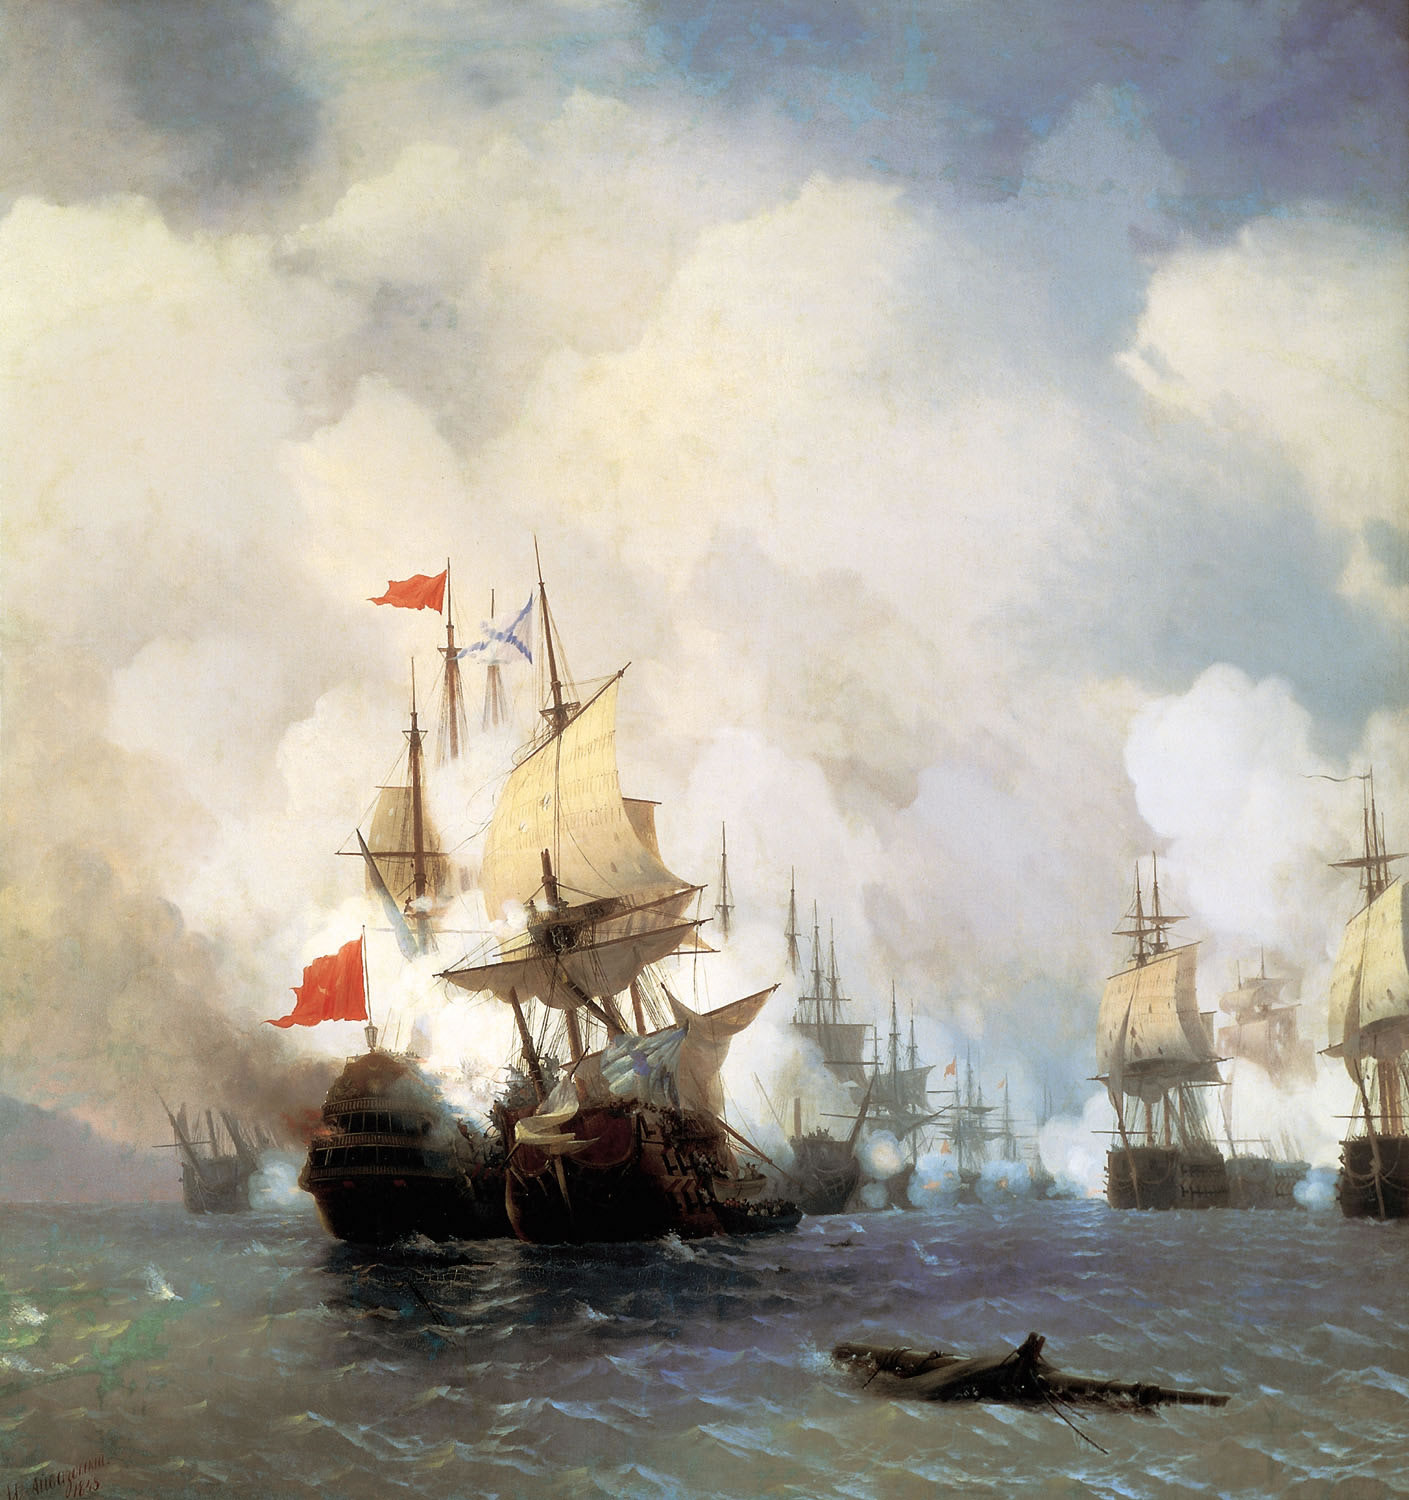 Иван Айвазовский. Бой в Хиосском проливе 24 июня 1770 г. 1848.